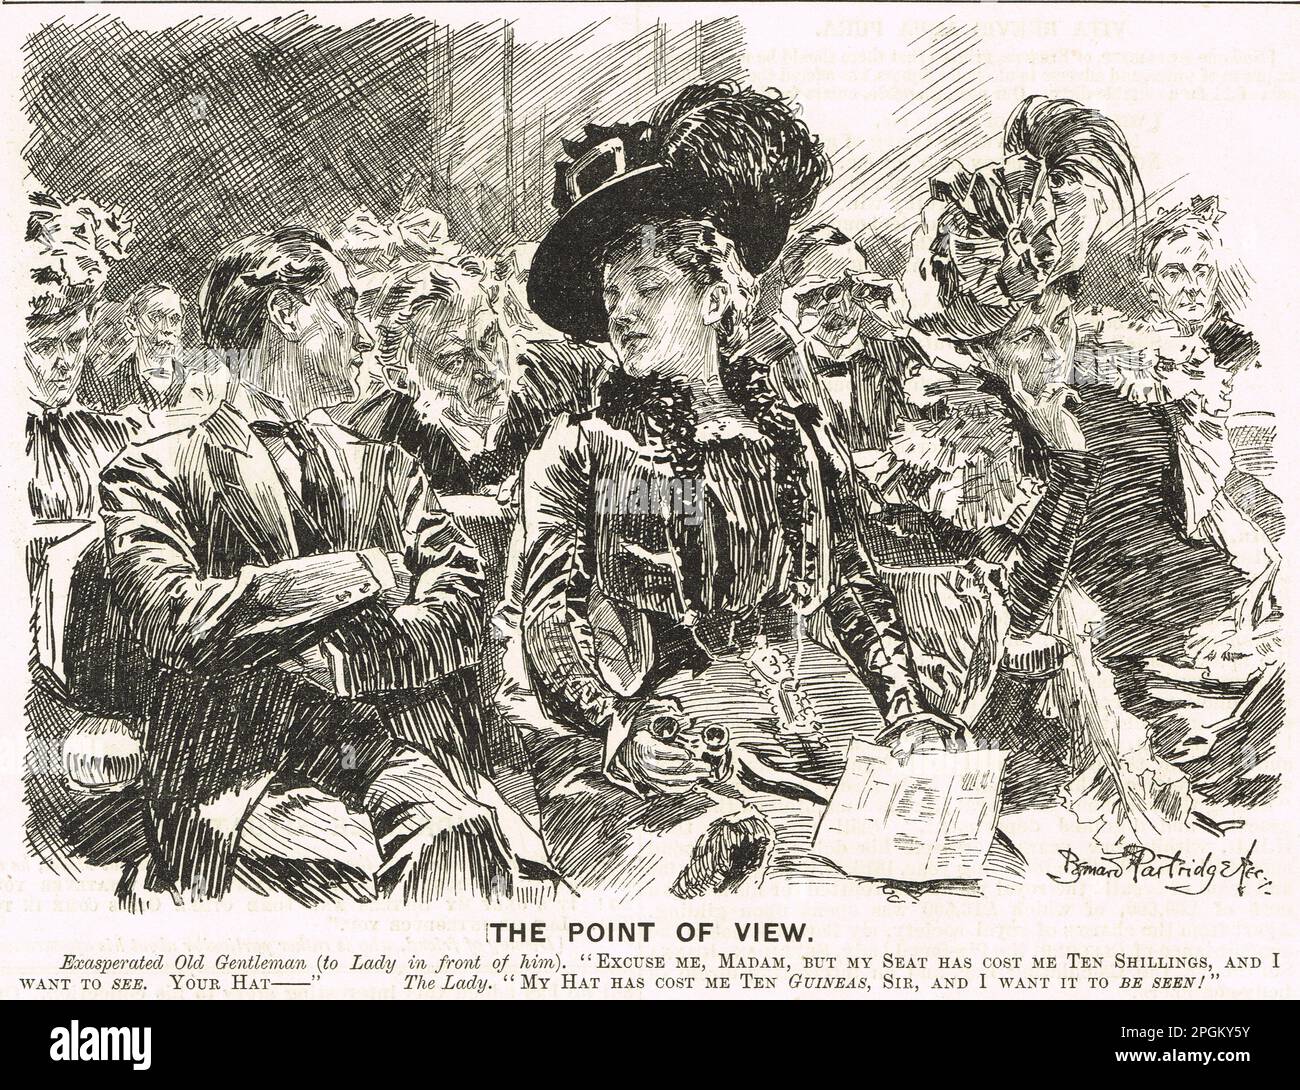 Punch Cartoon von 1899 mit dem Titel "The Point of View" von Bernard Partridge. Eine lustige Vorstellung von einem Mann, der eine Frau bittet, ihren Hut zu entfernen, und von ihrer Antwort niedergeschlagen wird. Stockfoto